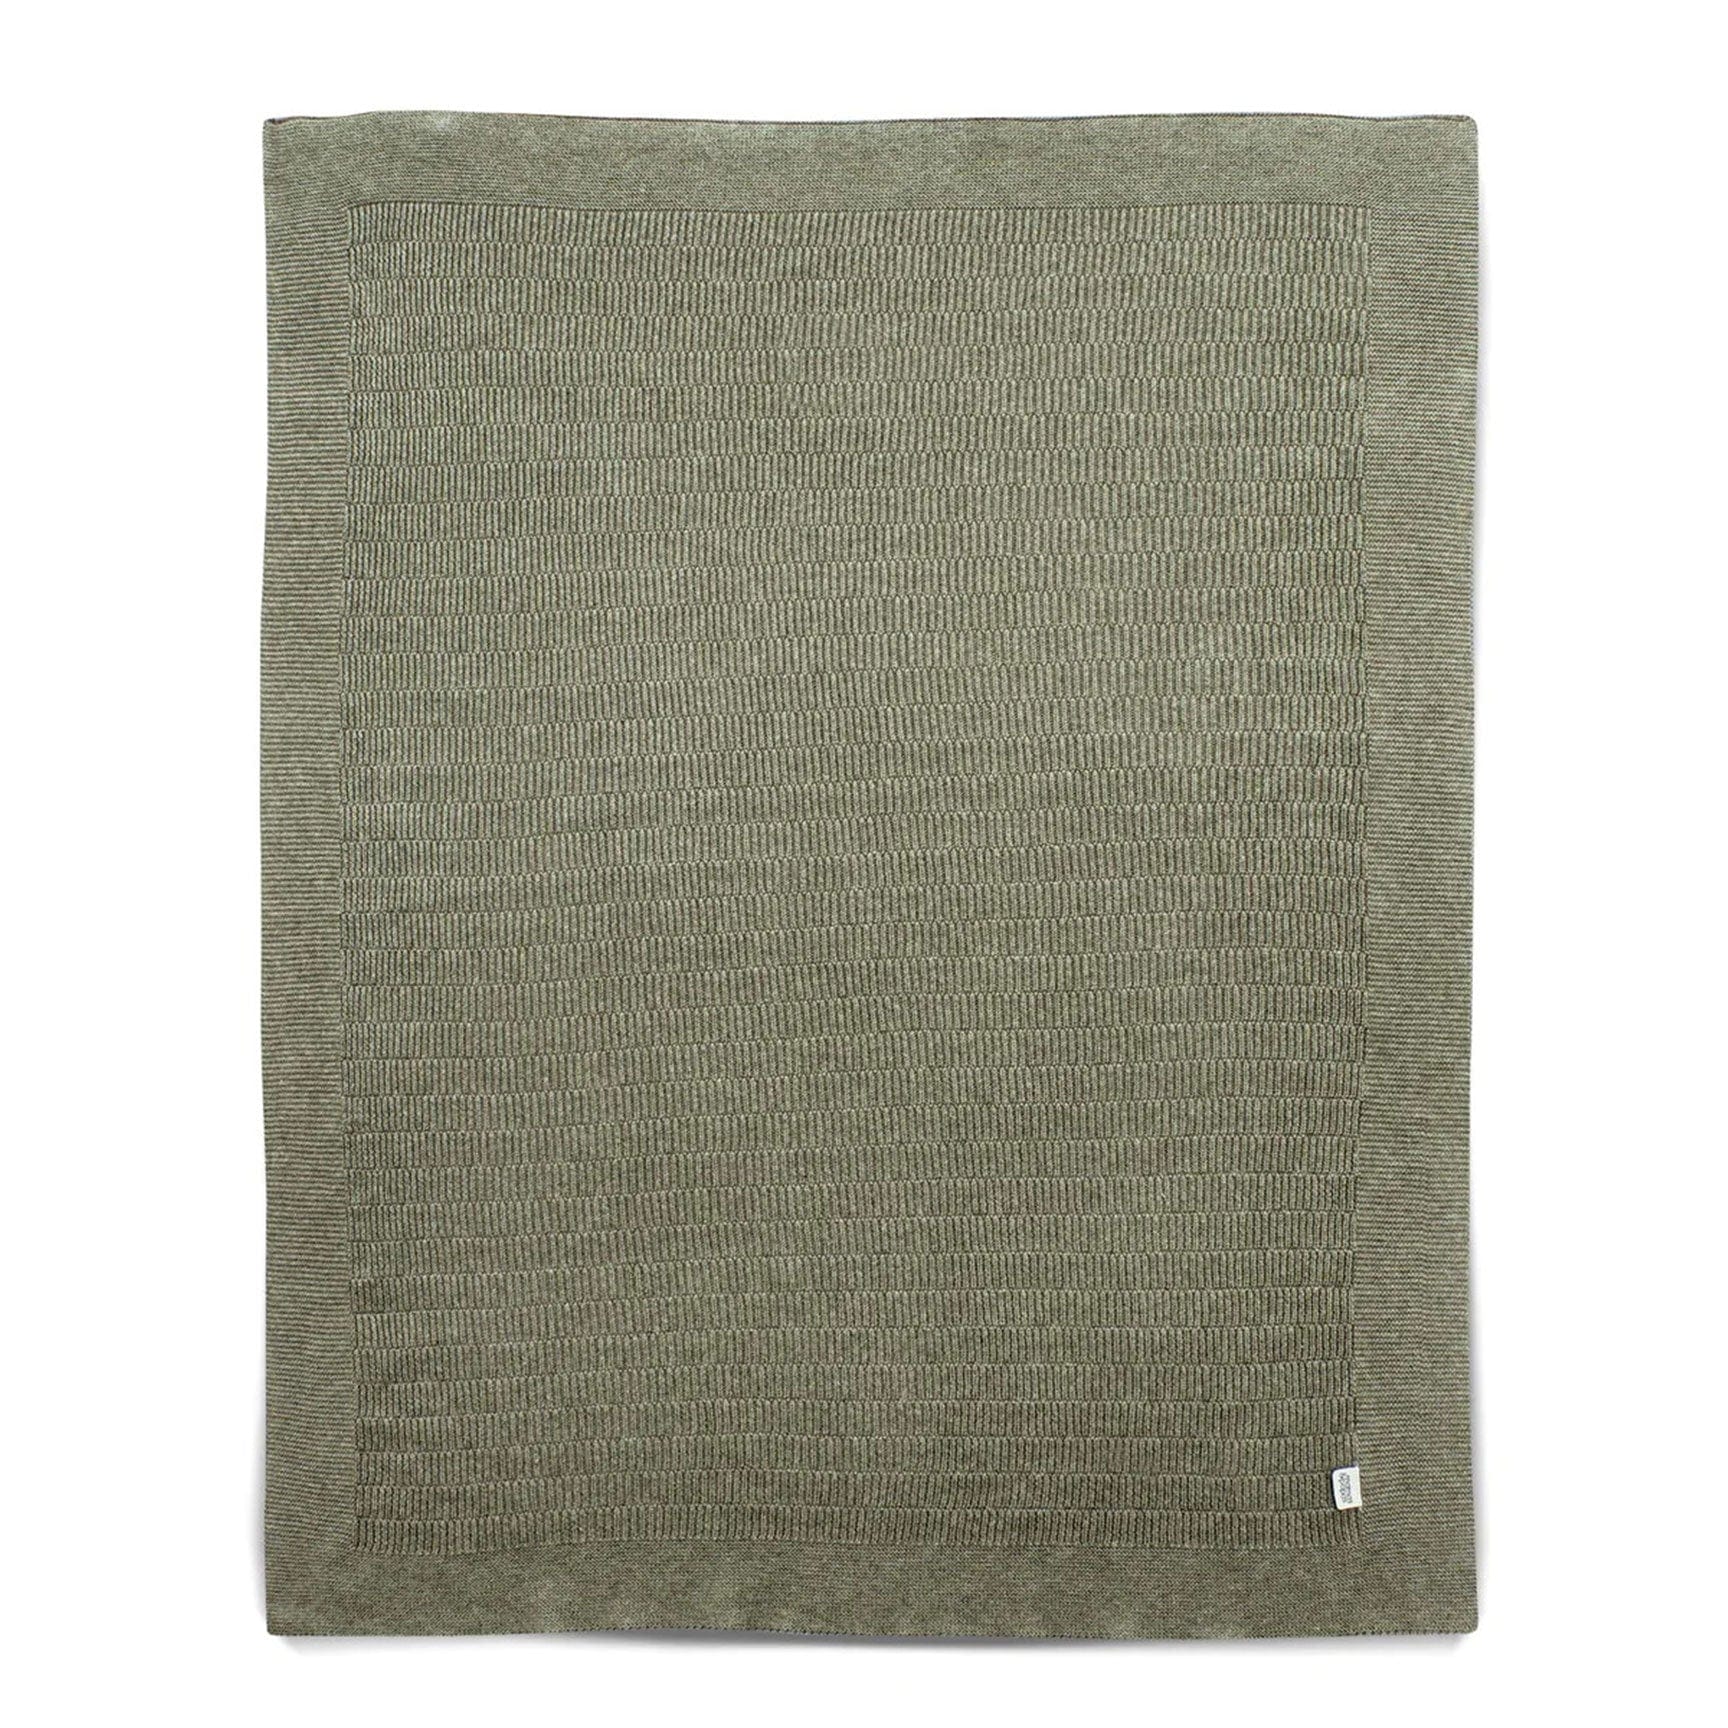 Mamas & Papas Cot & Cot Bed Blankets Mamas & Papas Knitted Blanket Small - Khaki Rib 7883JS701